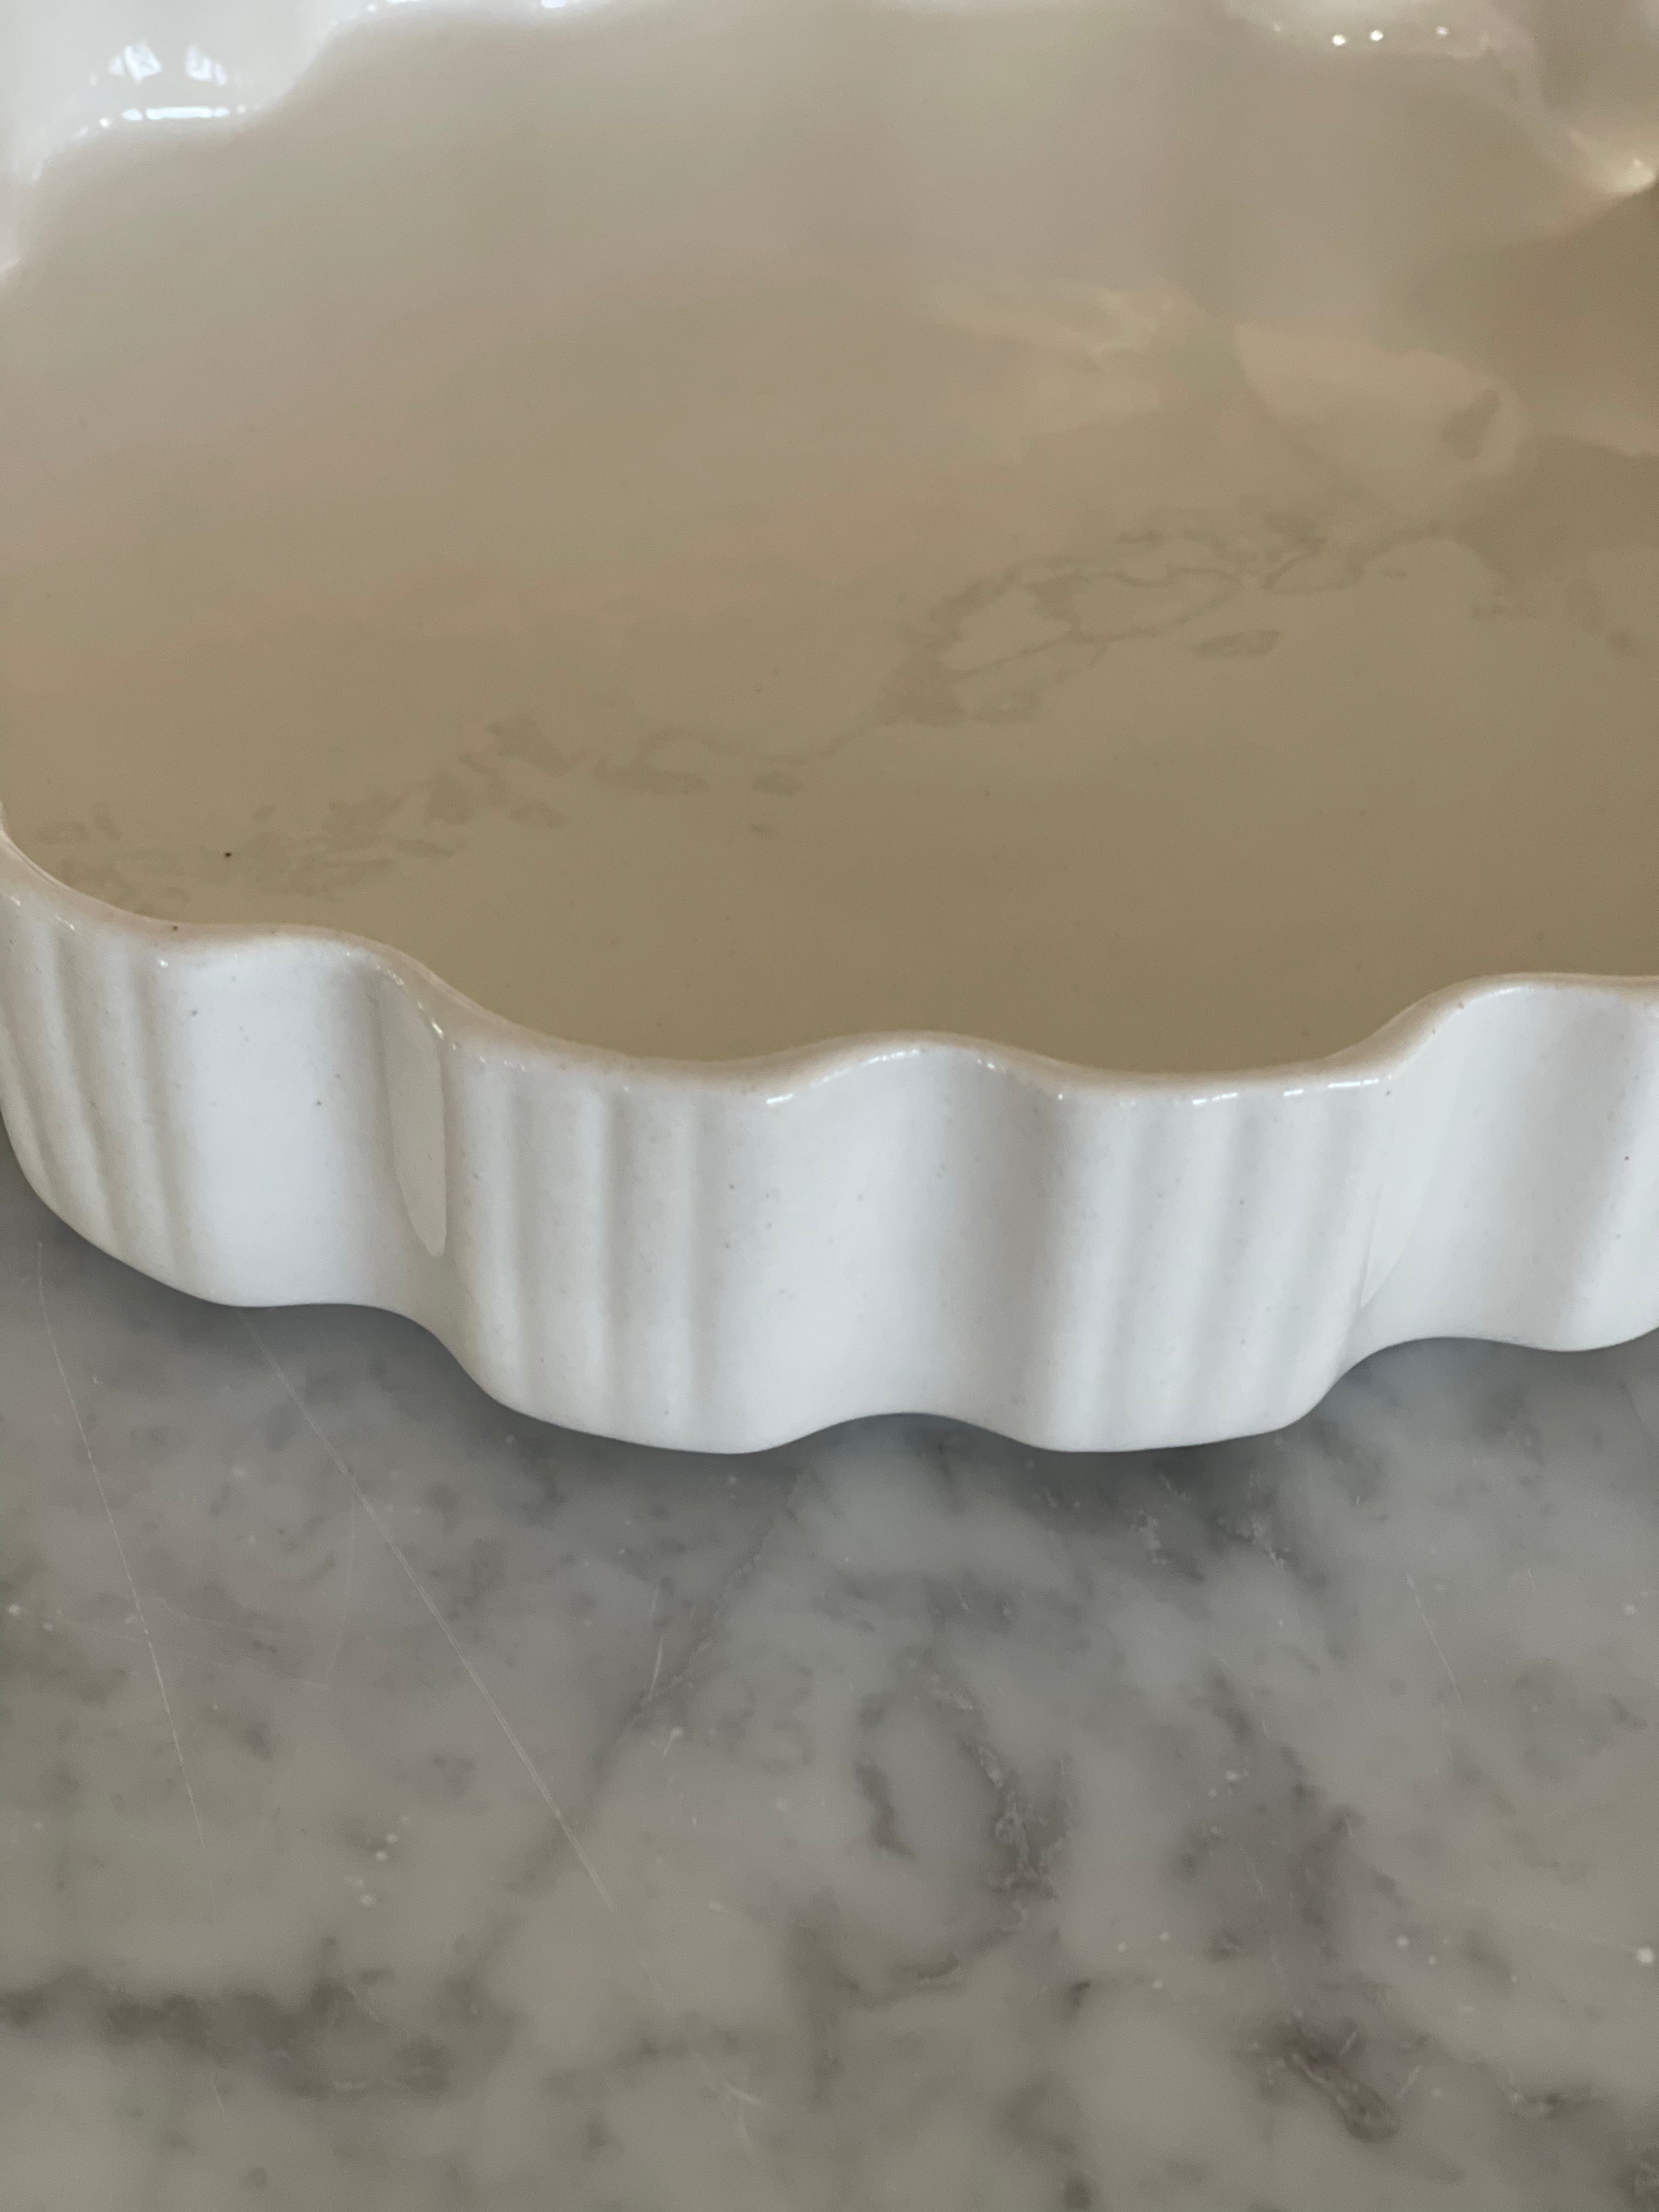 Tart or Quiche Ceramic Pan